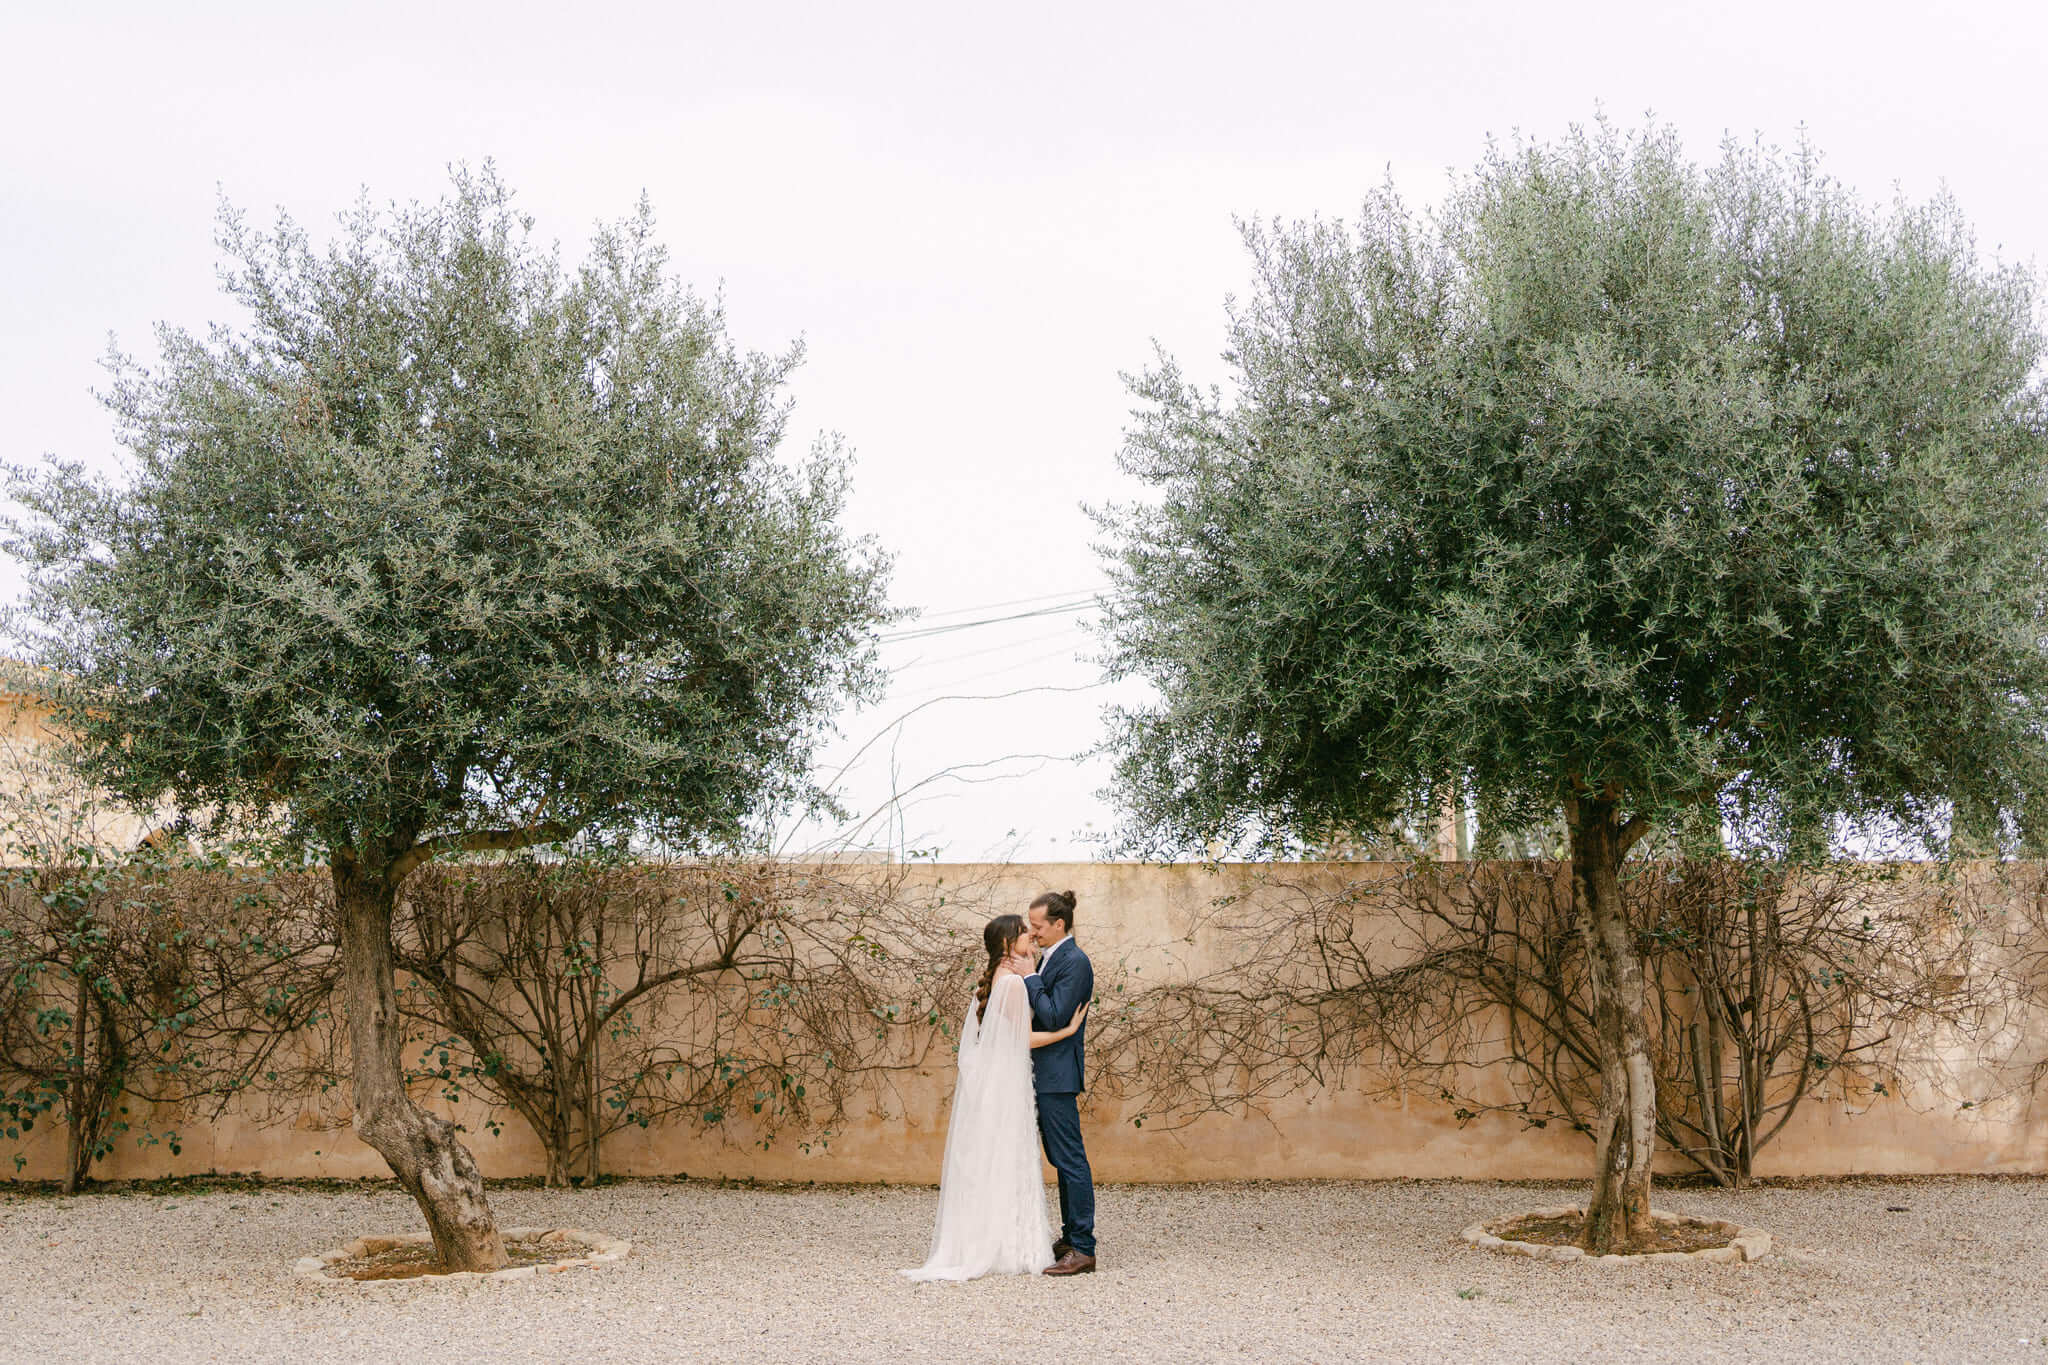 Brautpaar steht zärtlich umschlungen vor einer alten Mauer und Olivenbäumen auf einer rustikalen Finca auf Mallorca, die Braut in einem schlichten weißen Kleid und der Bräutigam in einem dunkelblauen Anzug.